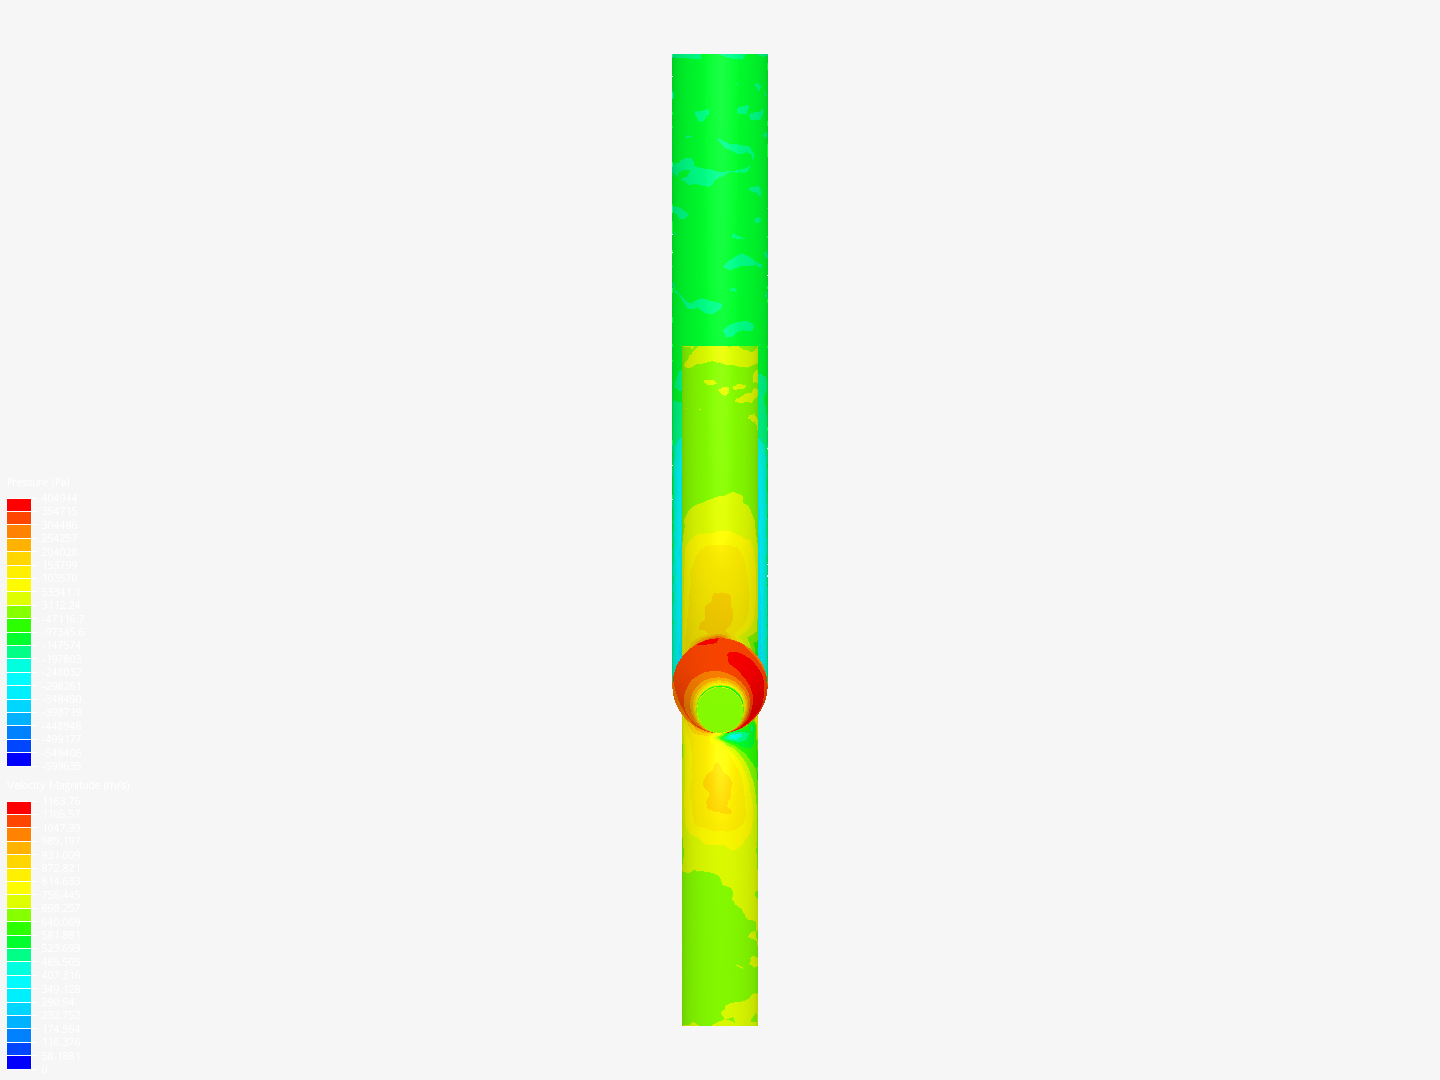 projek fluid simulation image